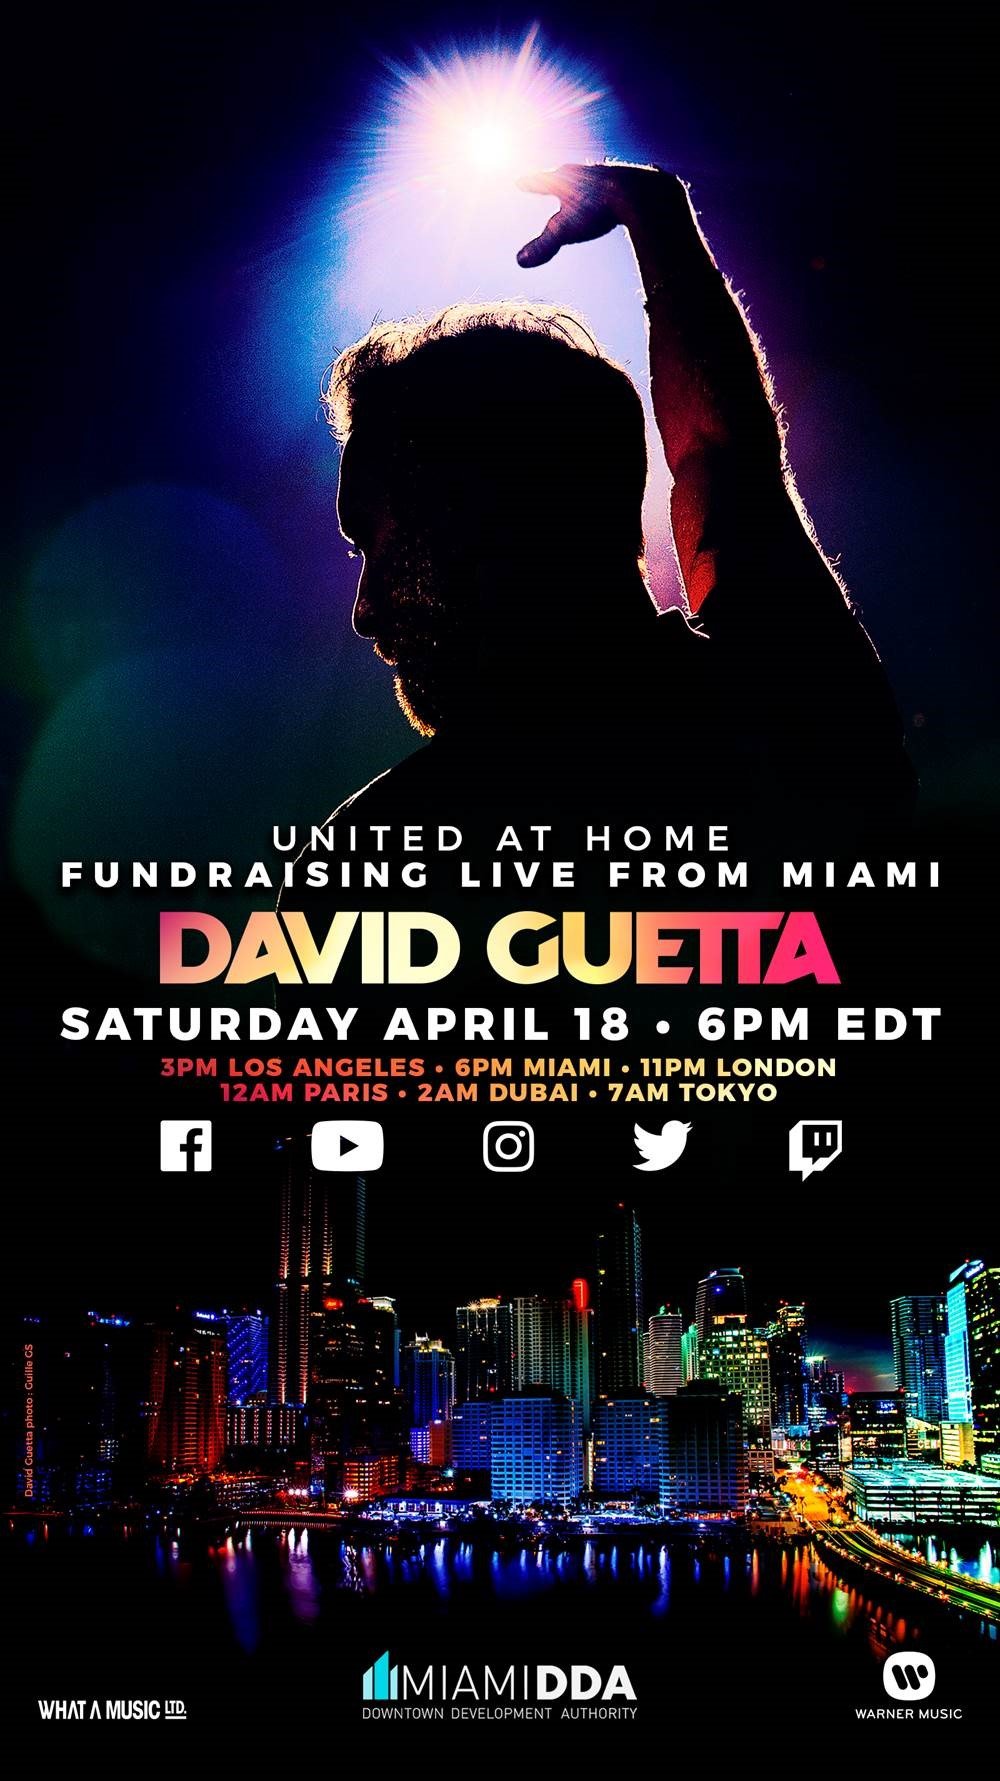 David Guetta: stasera un live che unirà il mondo attraverso la musica